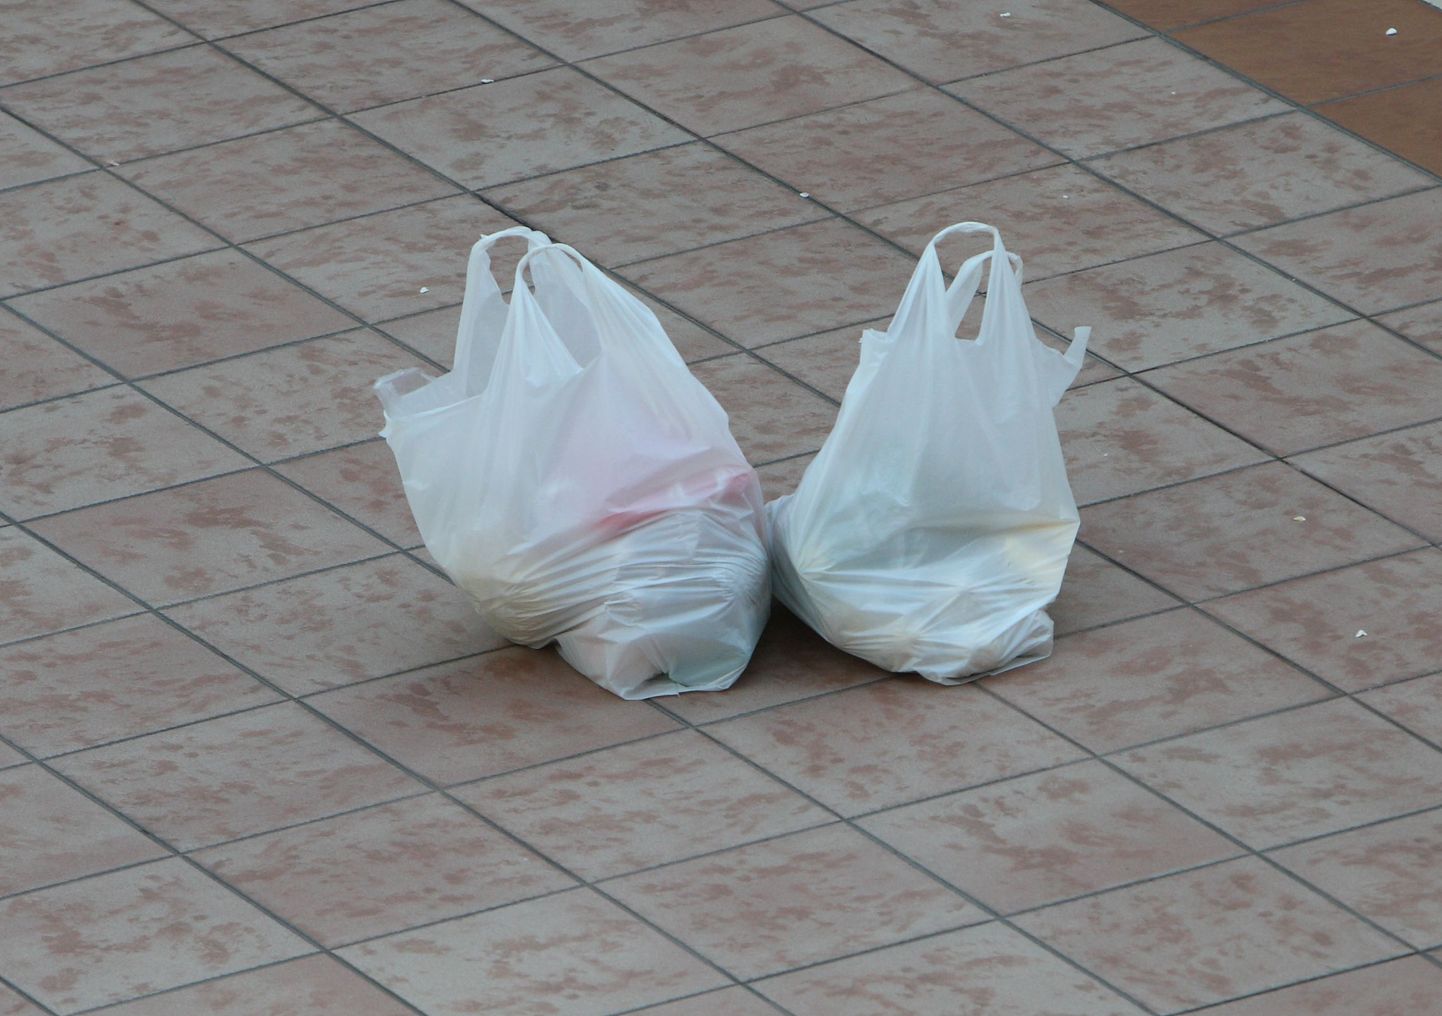 Uuring näitab kilekottide tarbimise vähenemist.